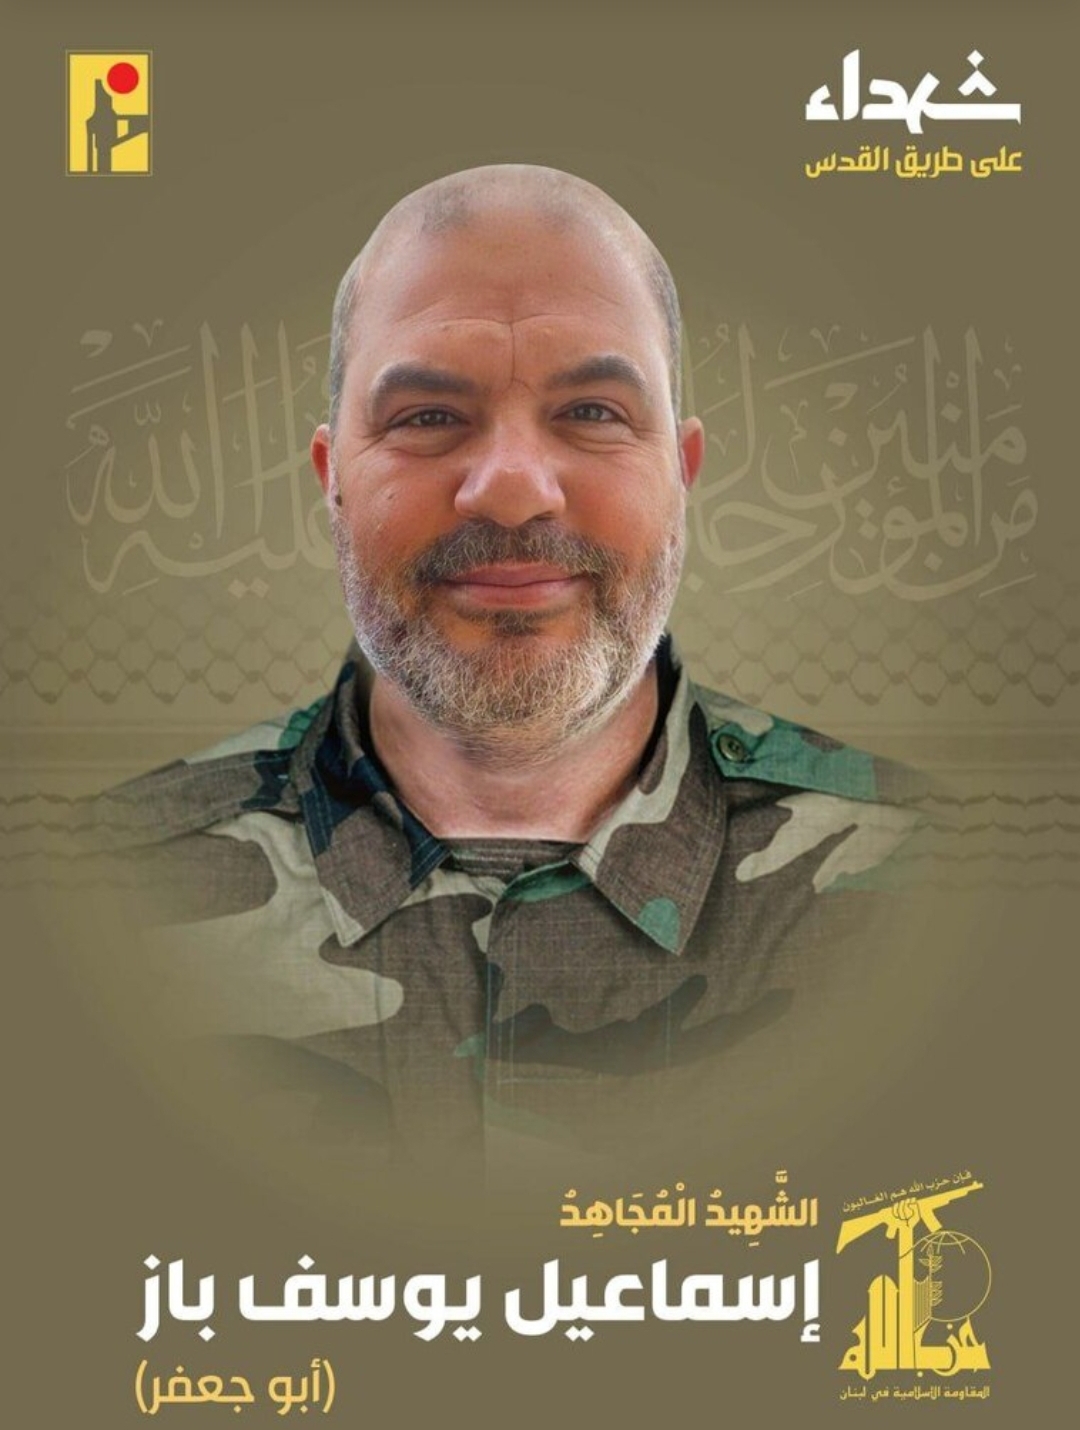 استشهاد قيادي كبير في حزب الله بغارة اسرائيلية جنوب لبنان و"الحزب " ينعاه